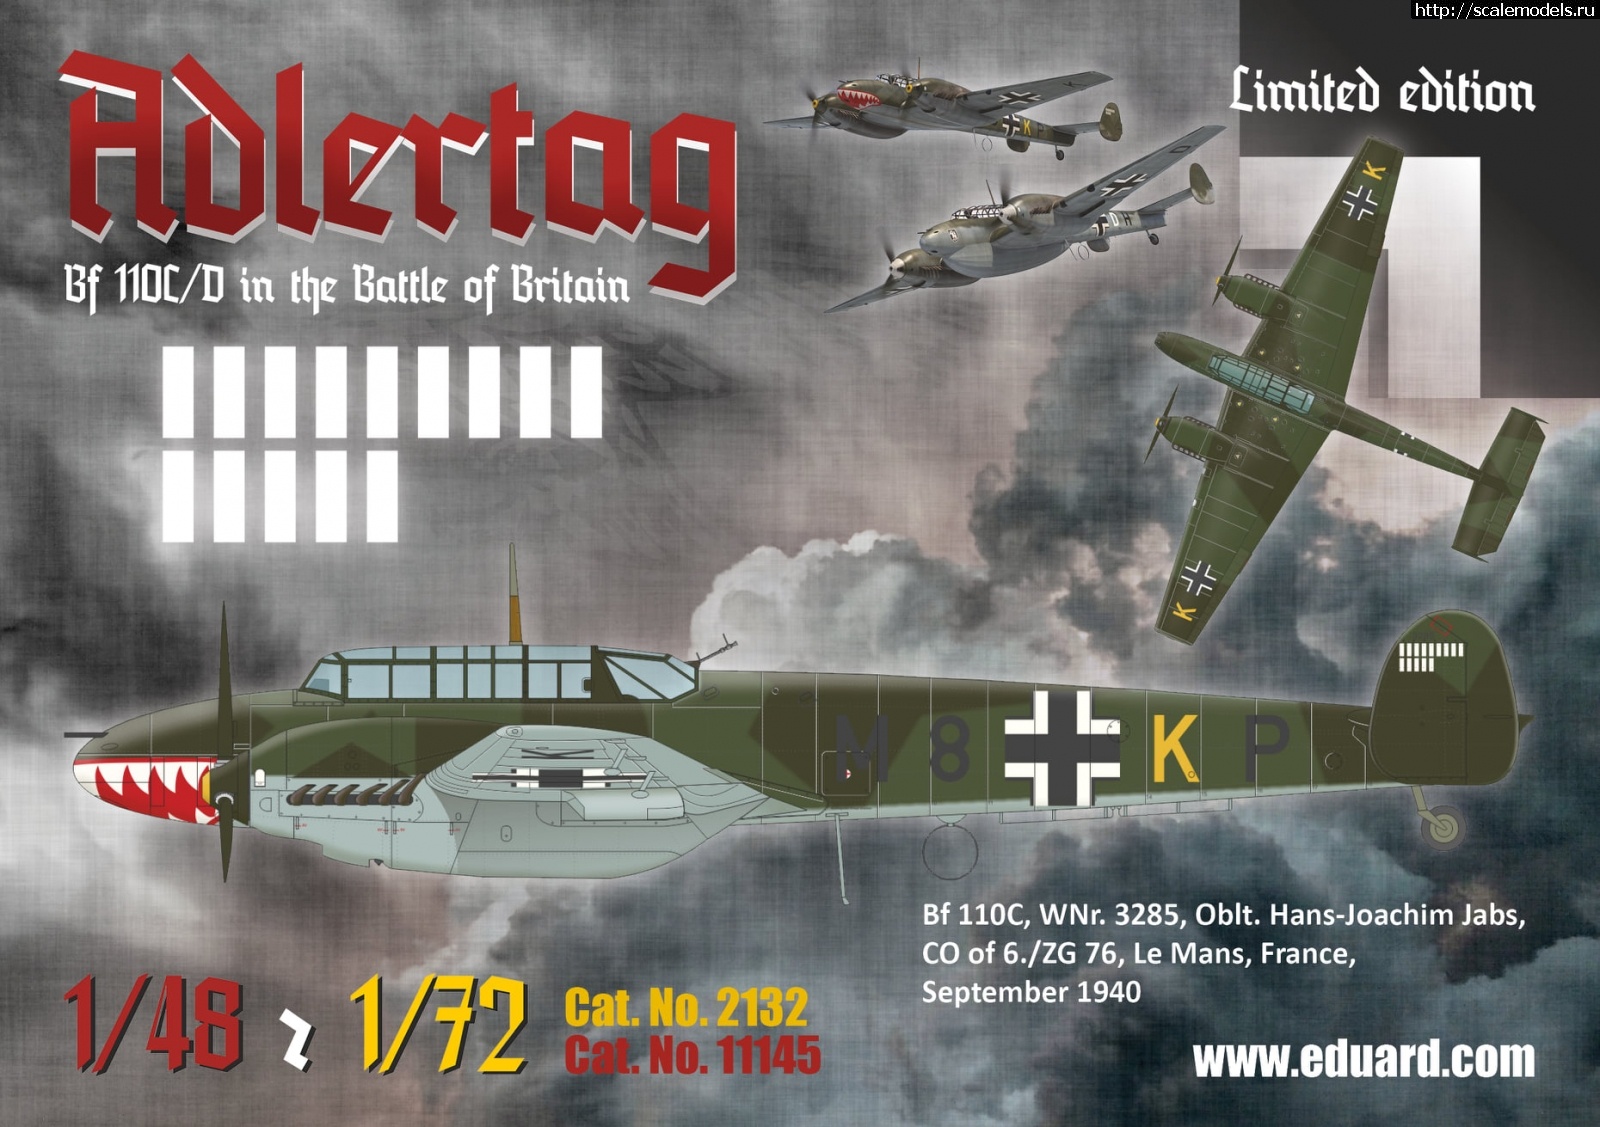 1604573773_123448083_3987468084601442_9158542374275225154_o.jpg :  Eduard 1/48  1/72 Messerschmitt Bf 110C/D Adlertag  